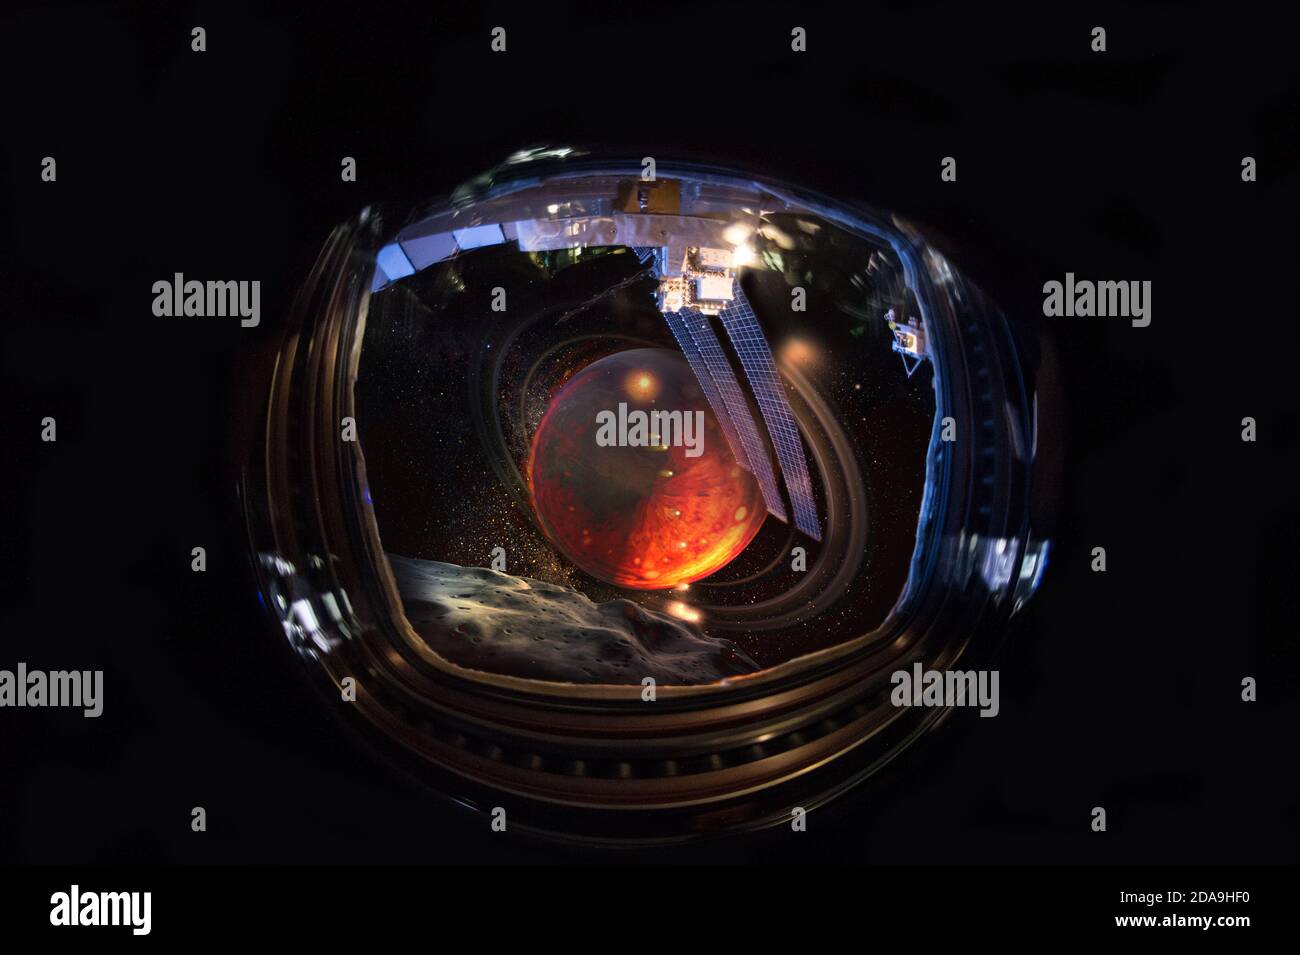 Alien World Blick vom Portohole. Außerirdische Planeten im Raumschiff-Fenster nach einem lond jorney. Elemente dieses Bildes, die von der NASA eingerichtet wurden. Stockfoto